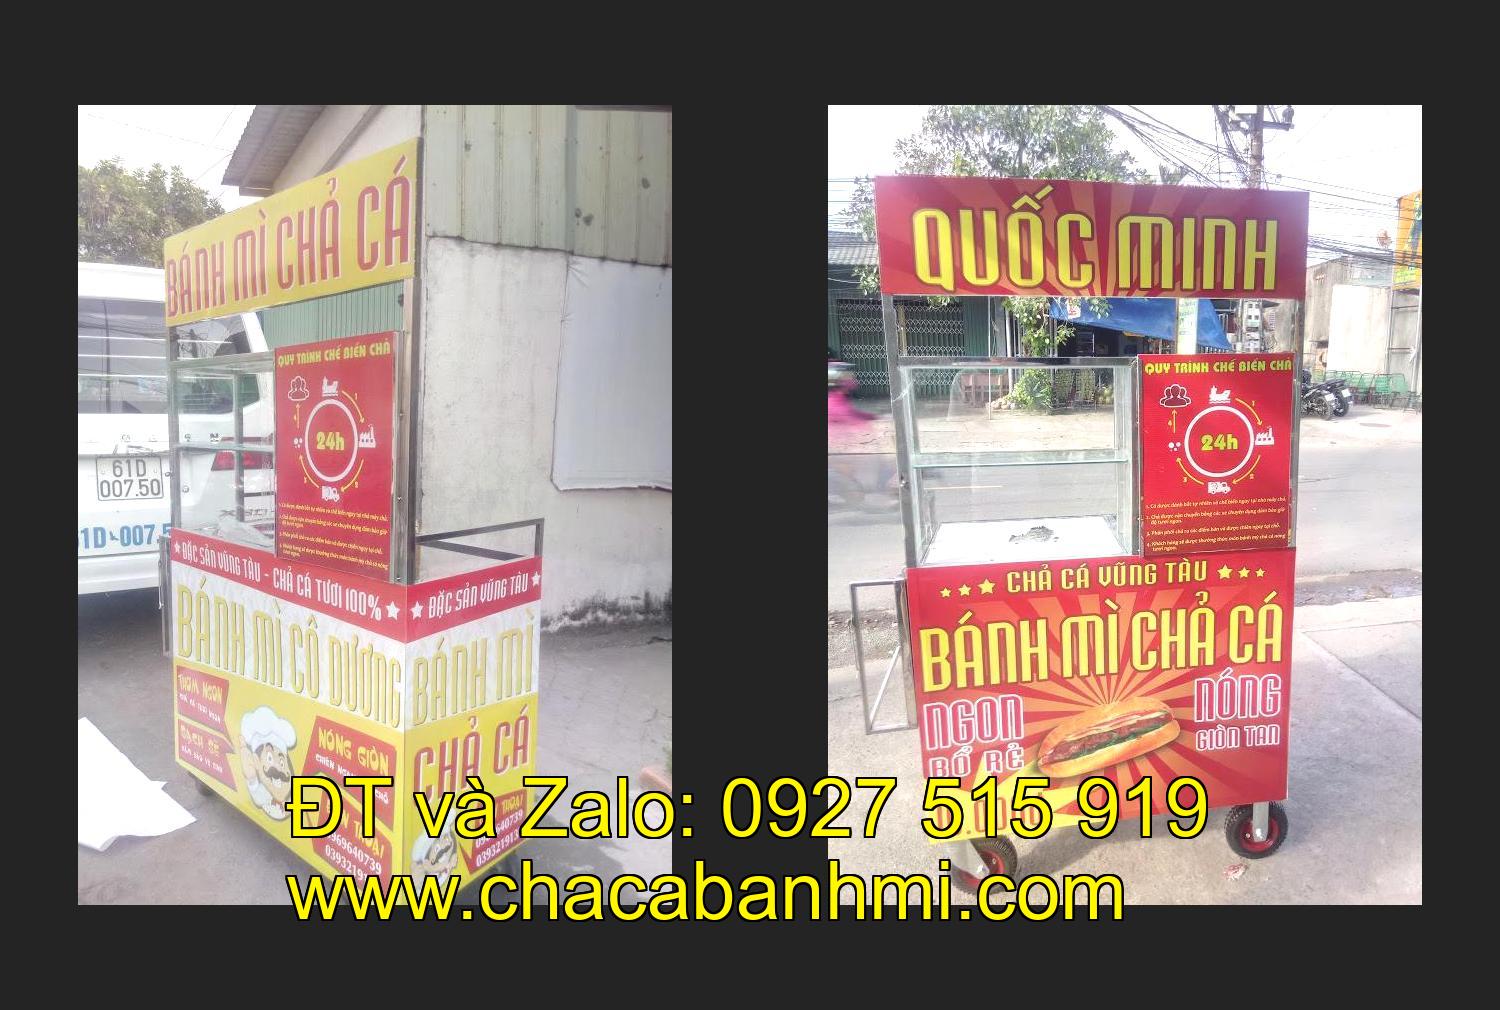 Bán xe bánh mì chả cá tại tỉnh Bình Định